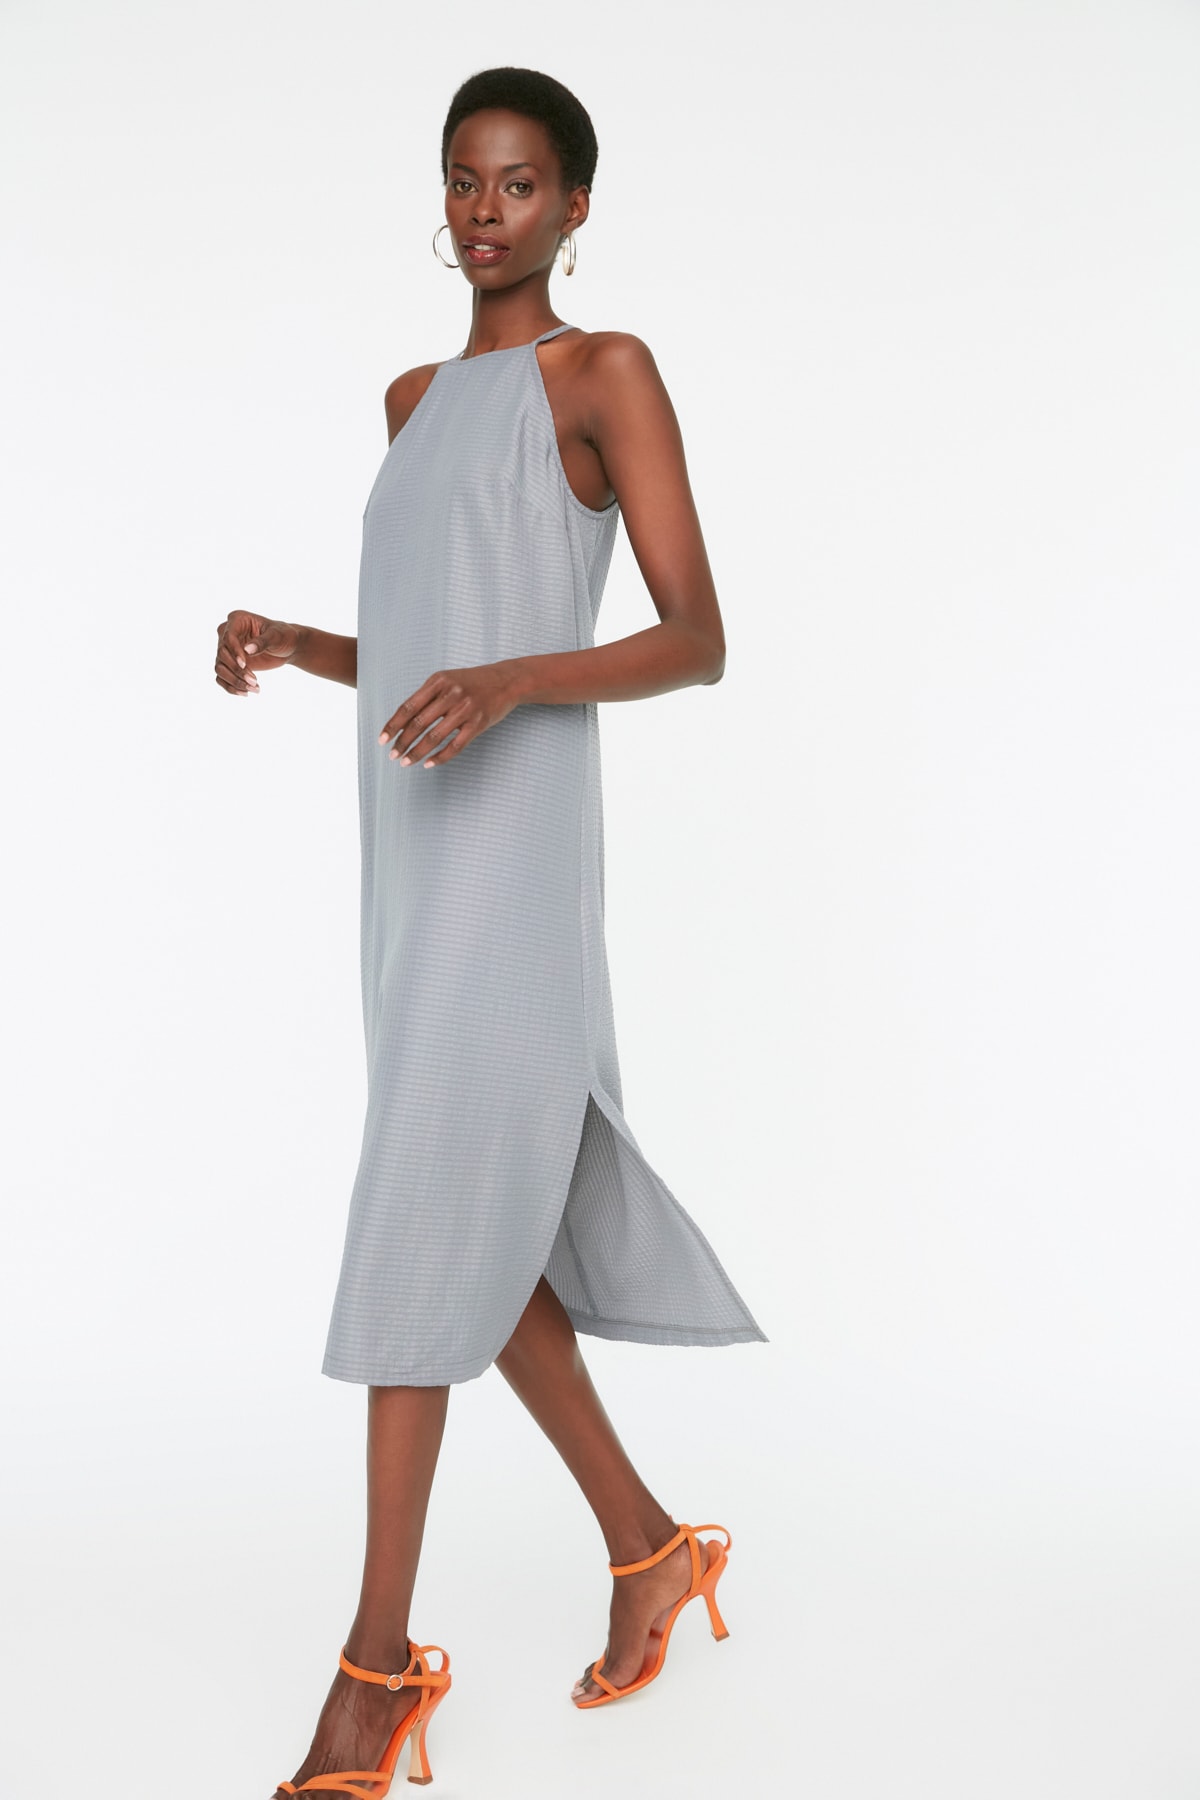 Trendyol Collection Kleid Blau Shift Fast ausverkauft